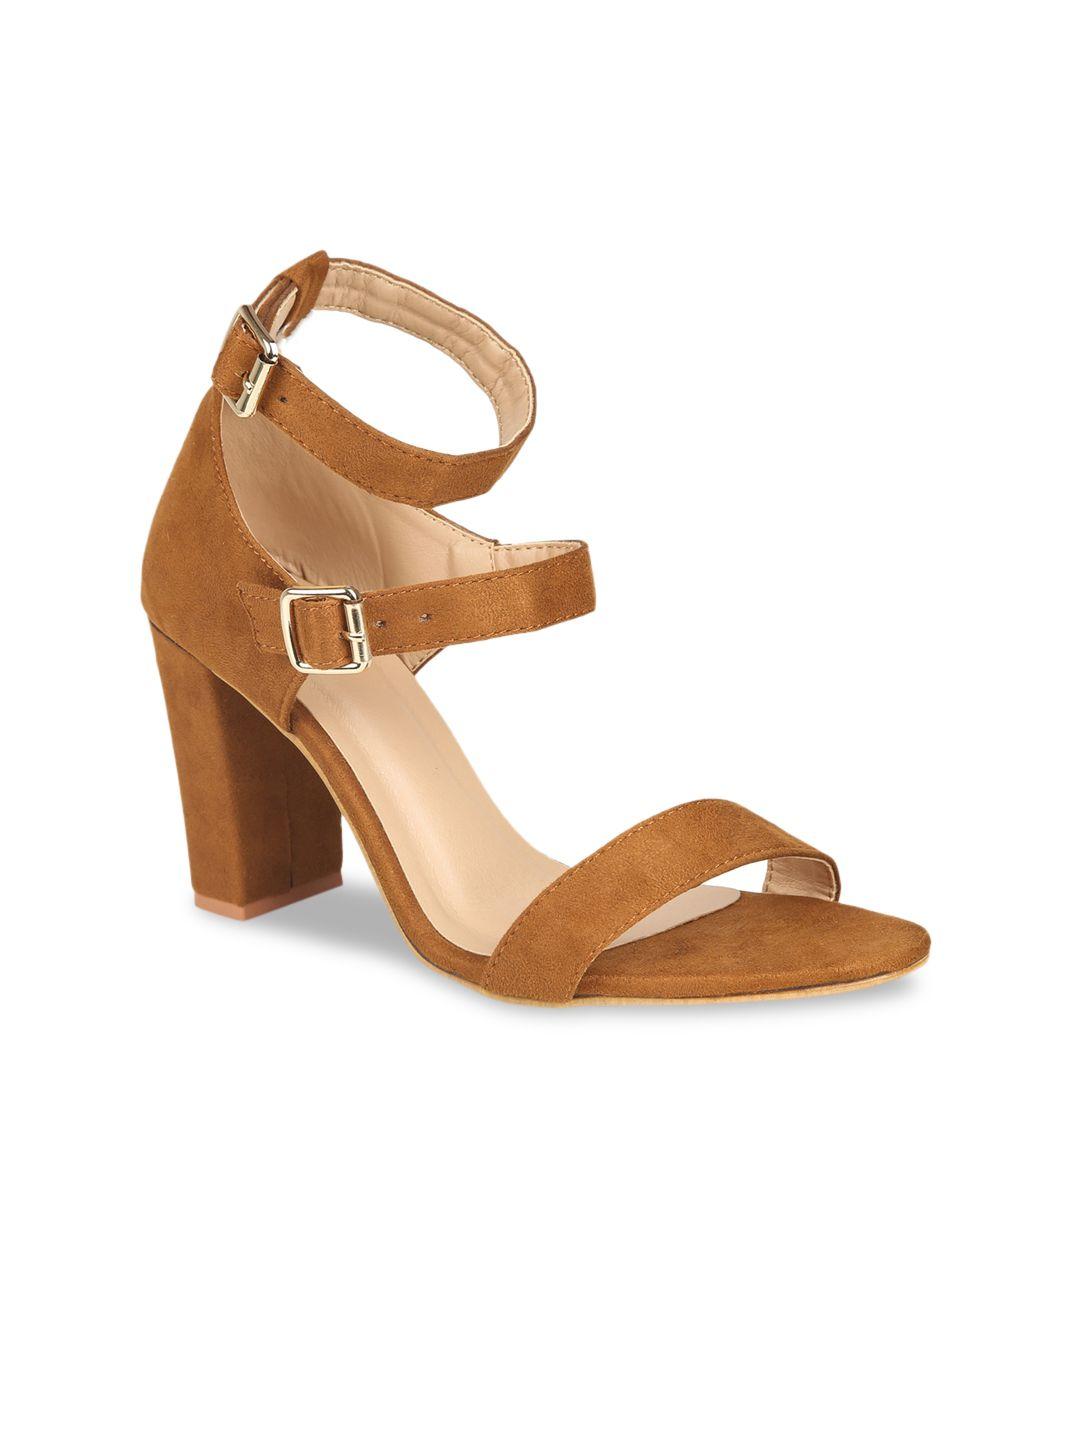 valiosaa brown suede block heels